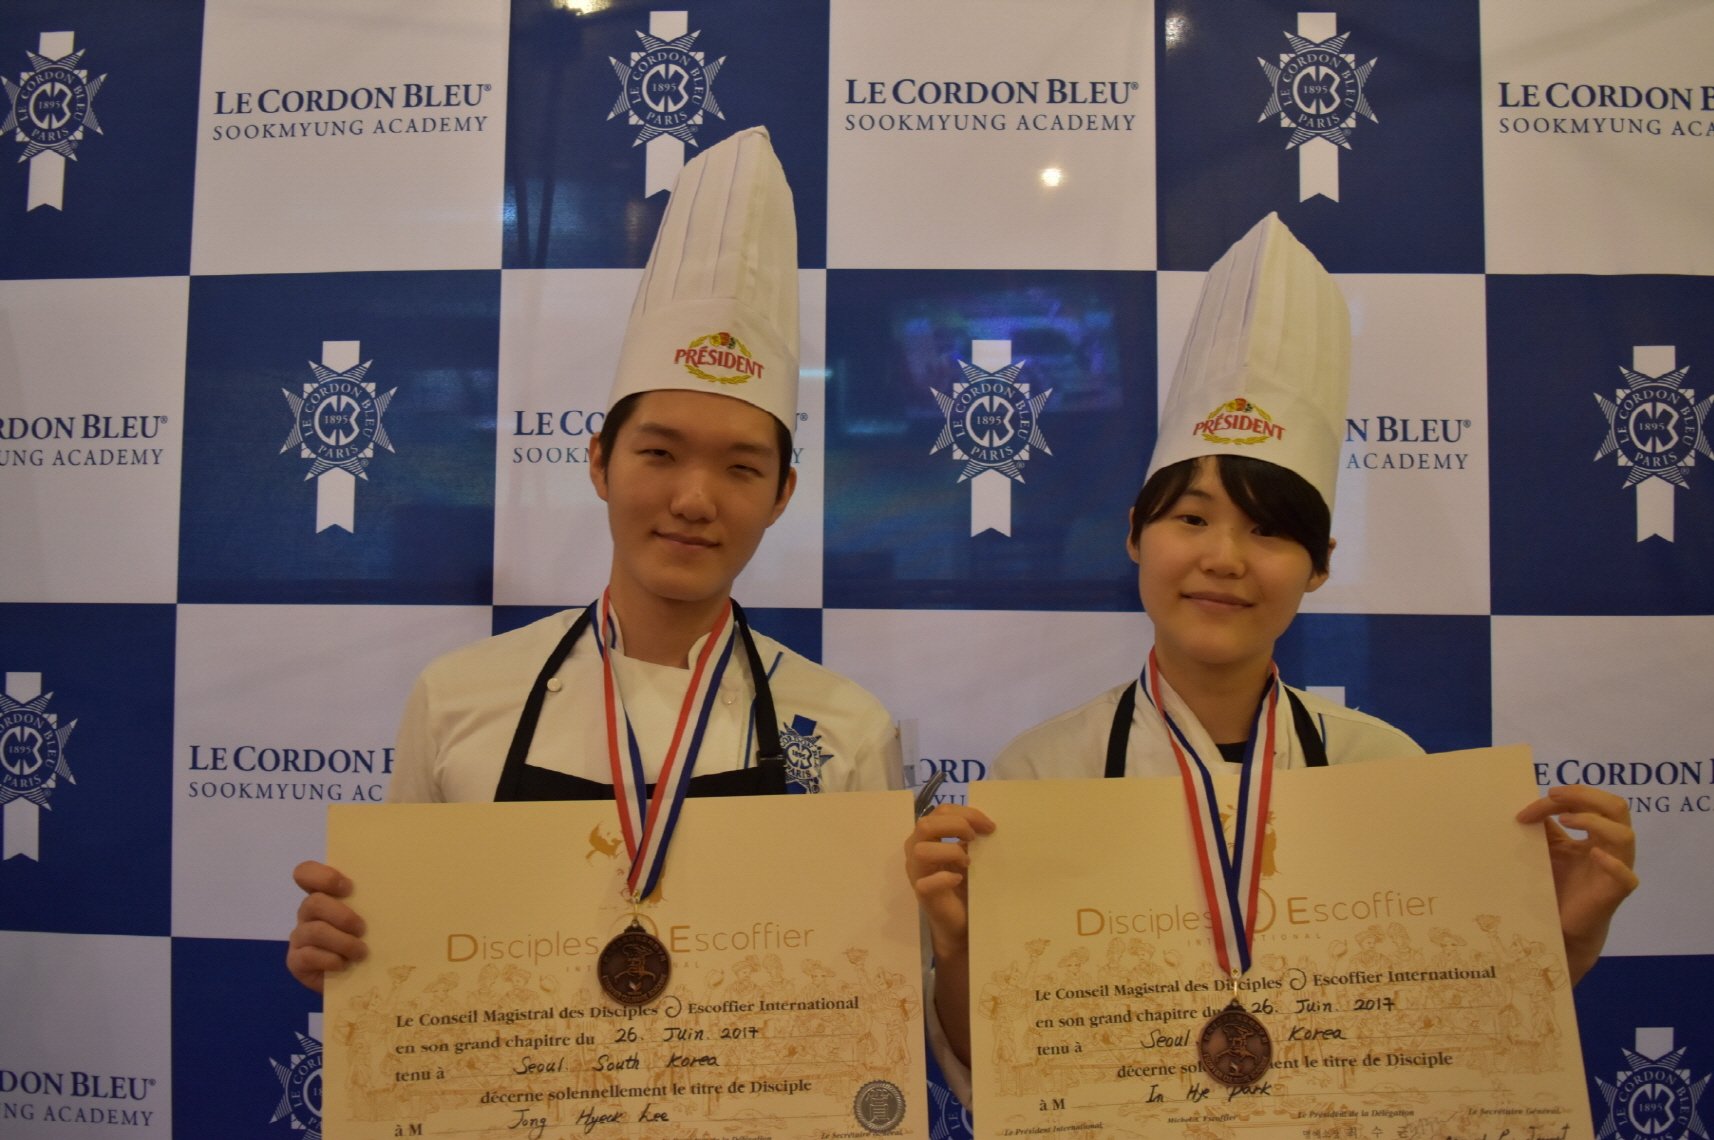 르 꼬르동 블루-숙명 아카데미, 2017 아시아 에스코피에 주니어 요리 대회, 한국 대표 선발전 개최 